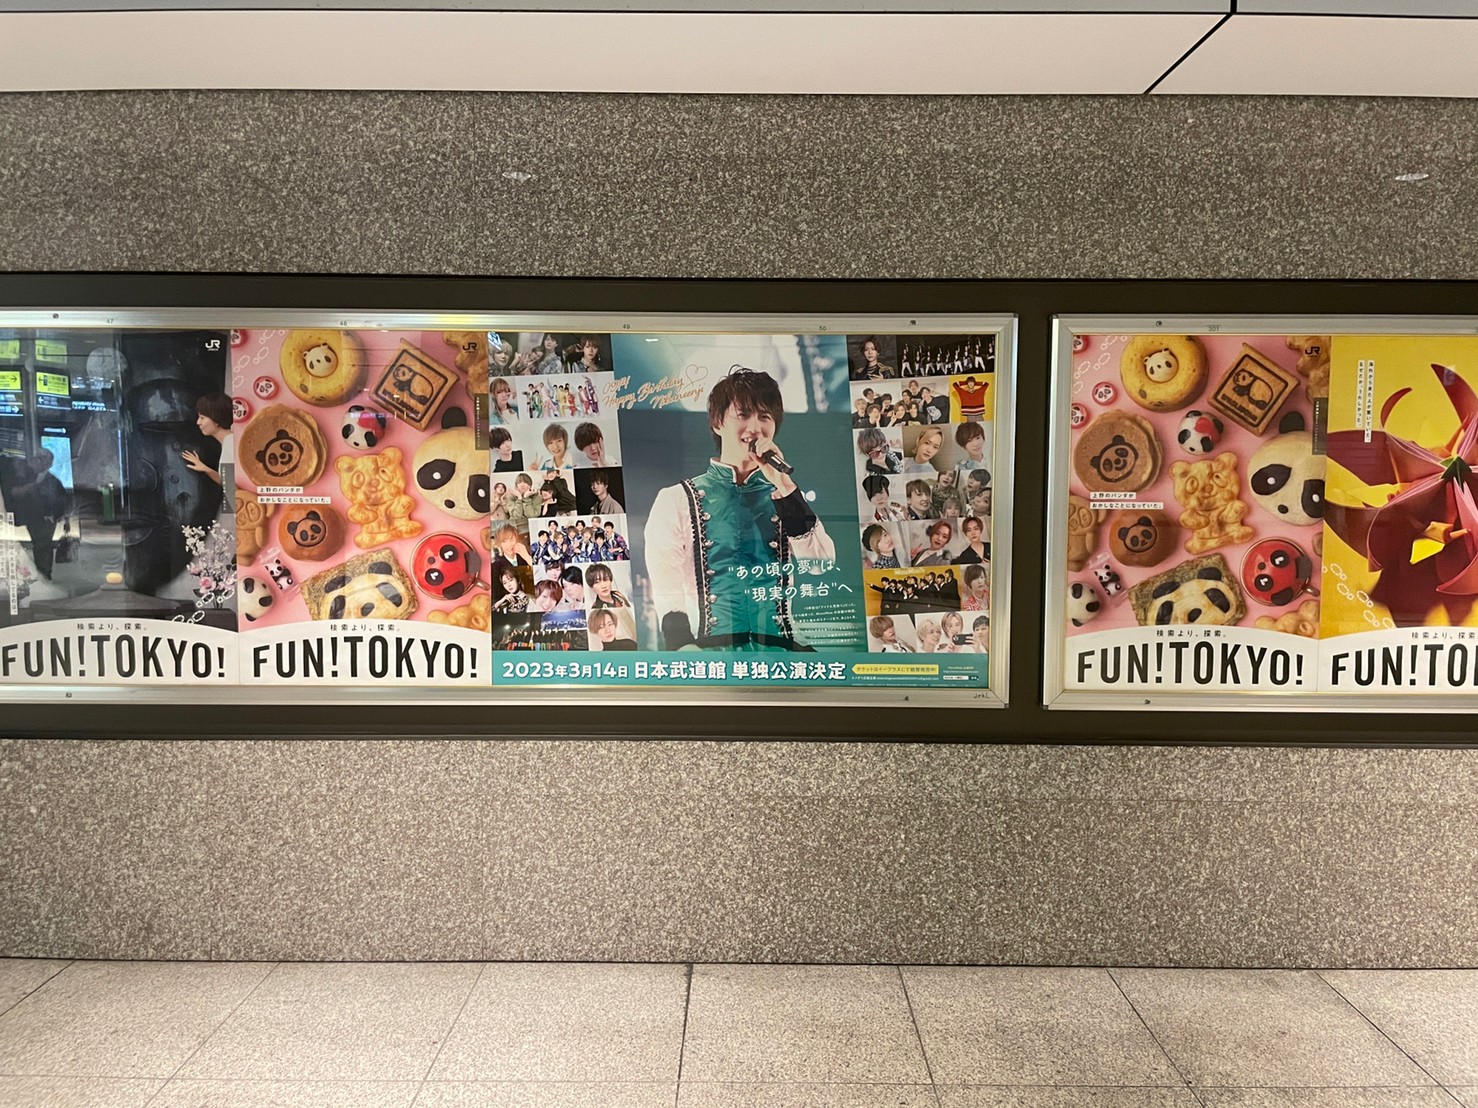 MeseMoa 二番煎じさん、誕生日をお祝いして東京駅で応援広告を実施